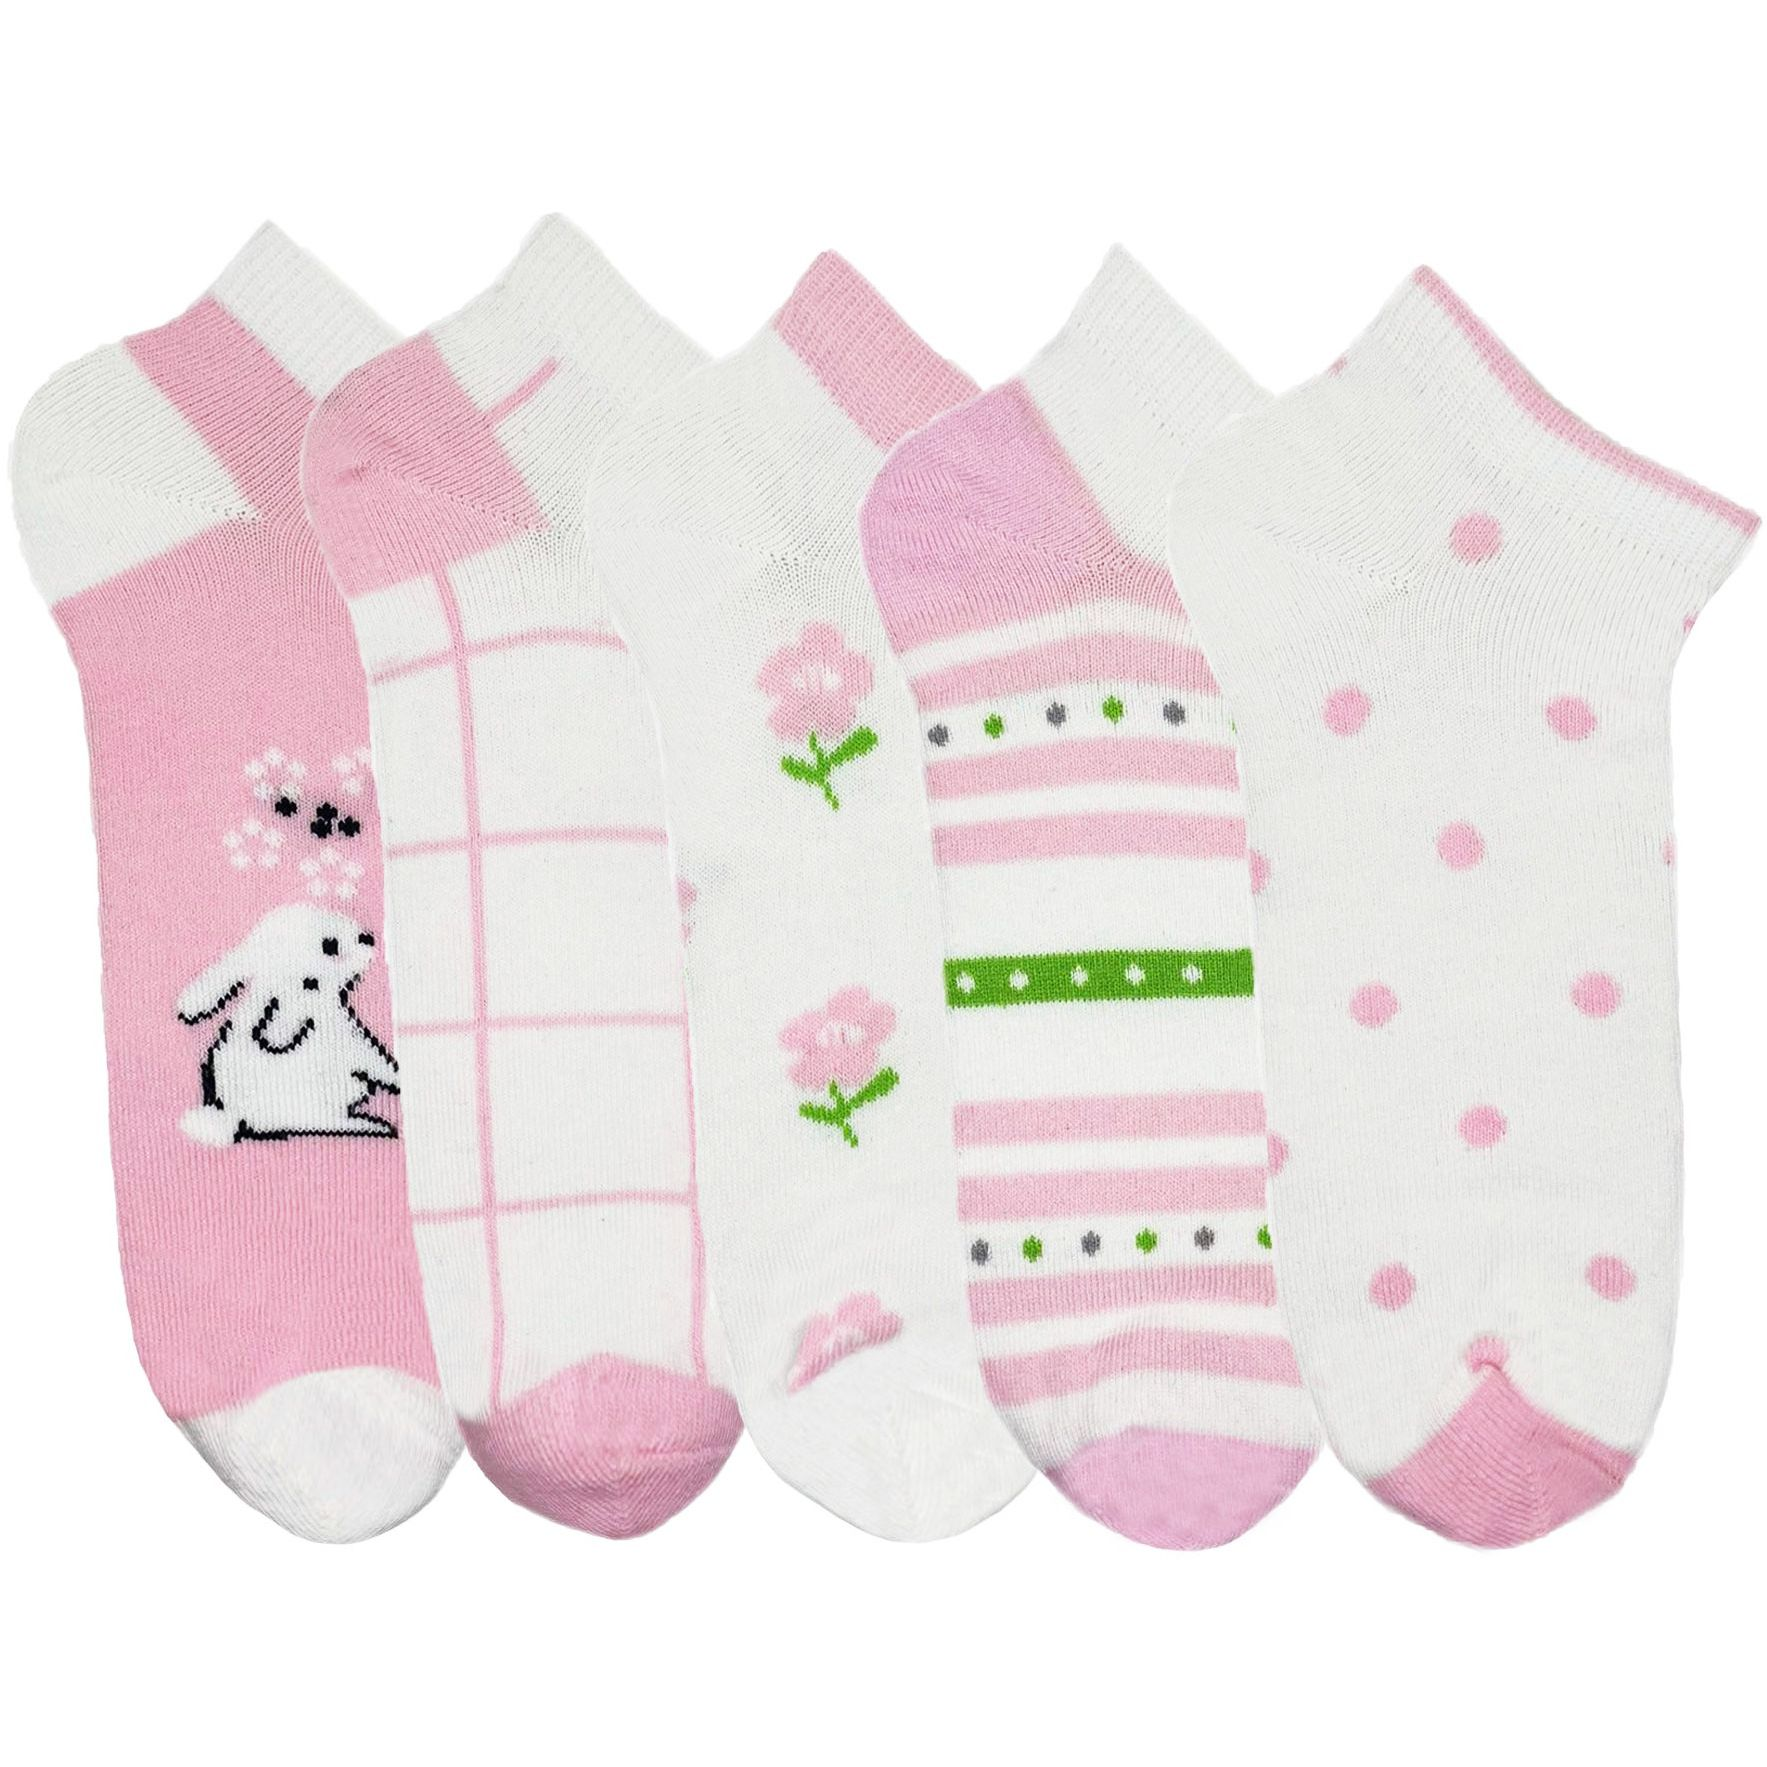 Набор носков Для девочек Premier Socks 22-24 5 пар розовые с принтом (4820163319728) фото 1